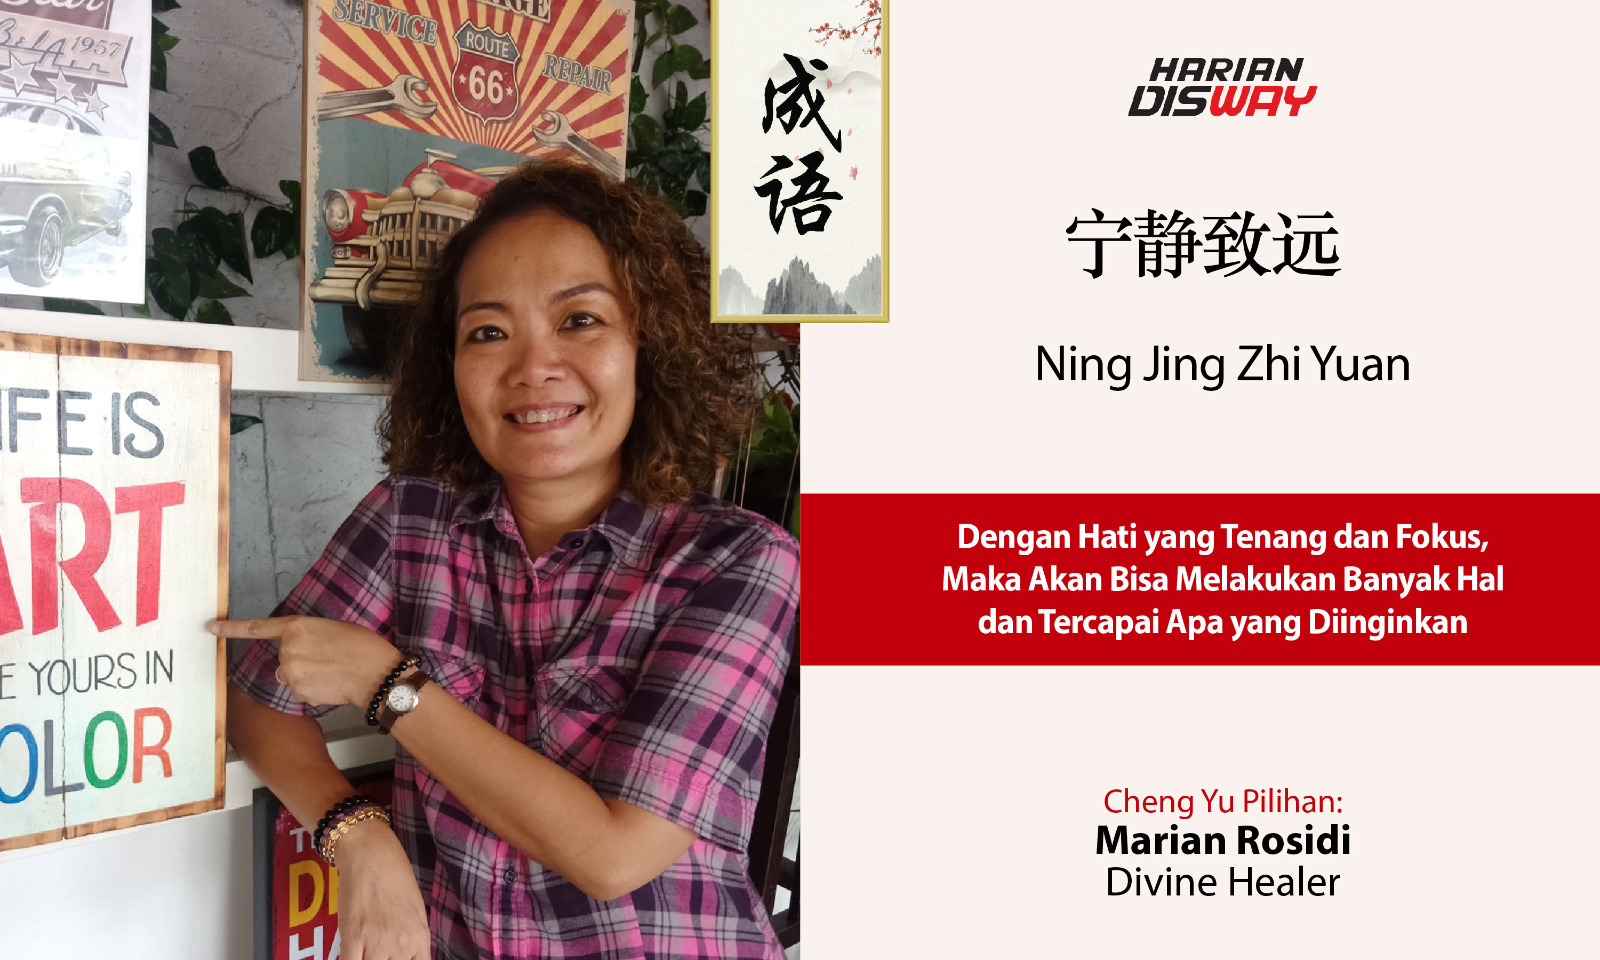 Cheng Yu Pilihan Divine Healer Marian Rosidi: Ning Jing Zhi Yuan